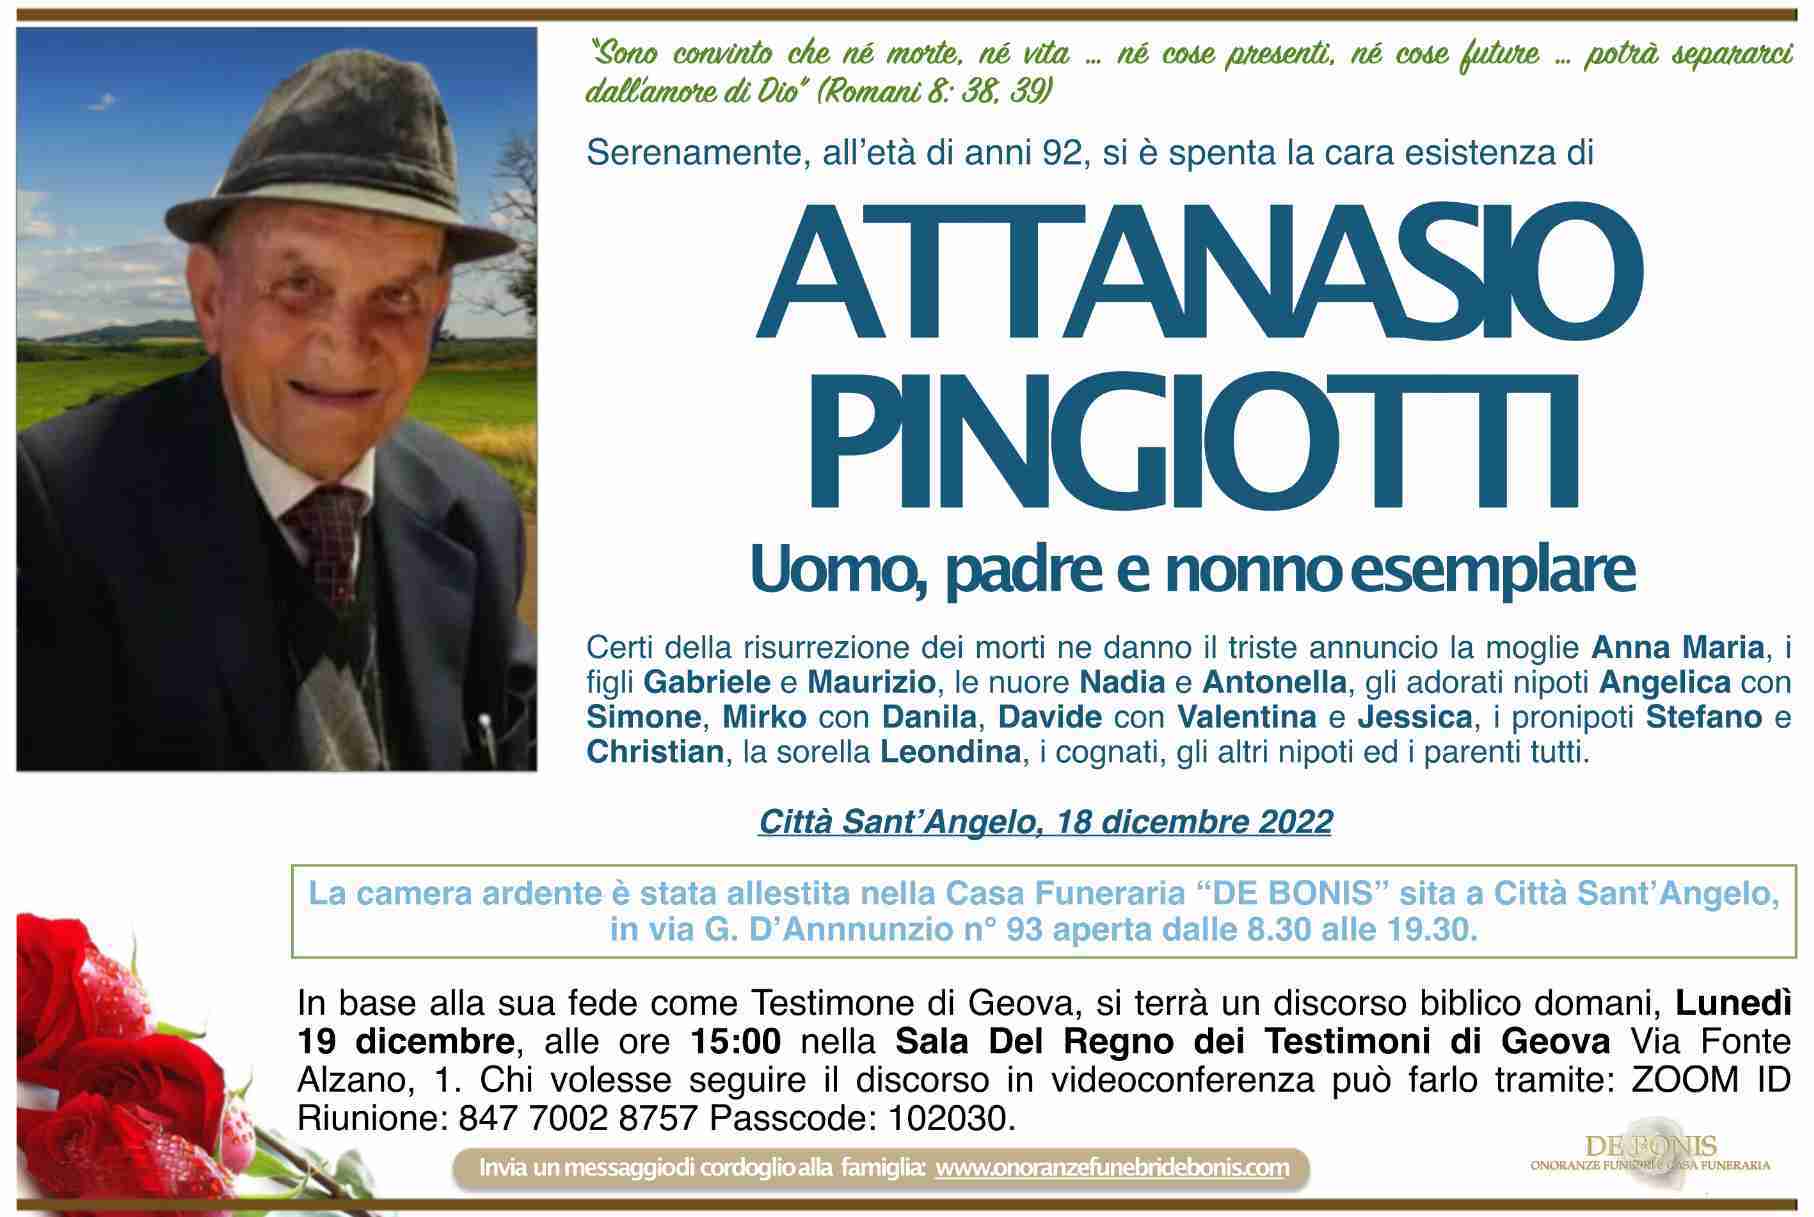 Attanasio Pingiotti